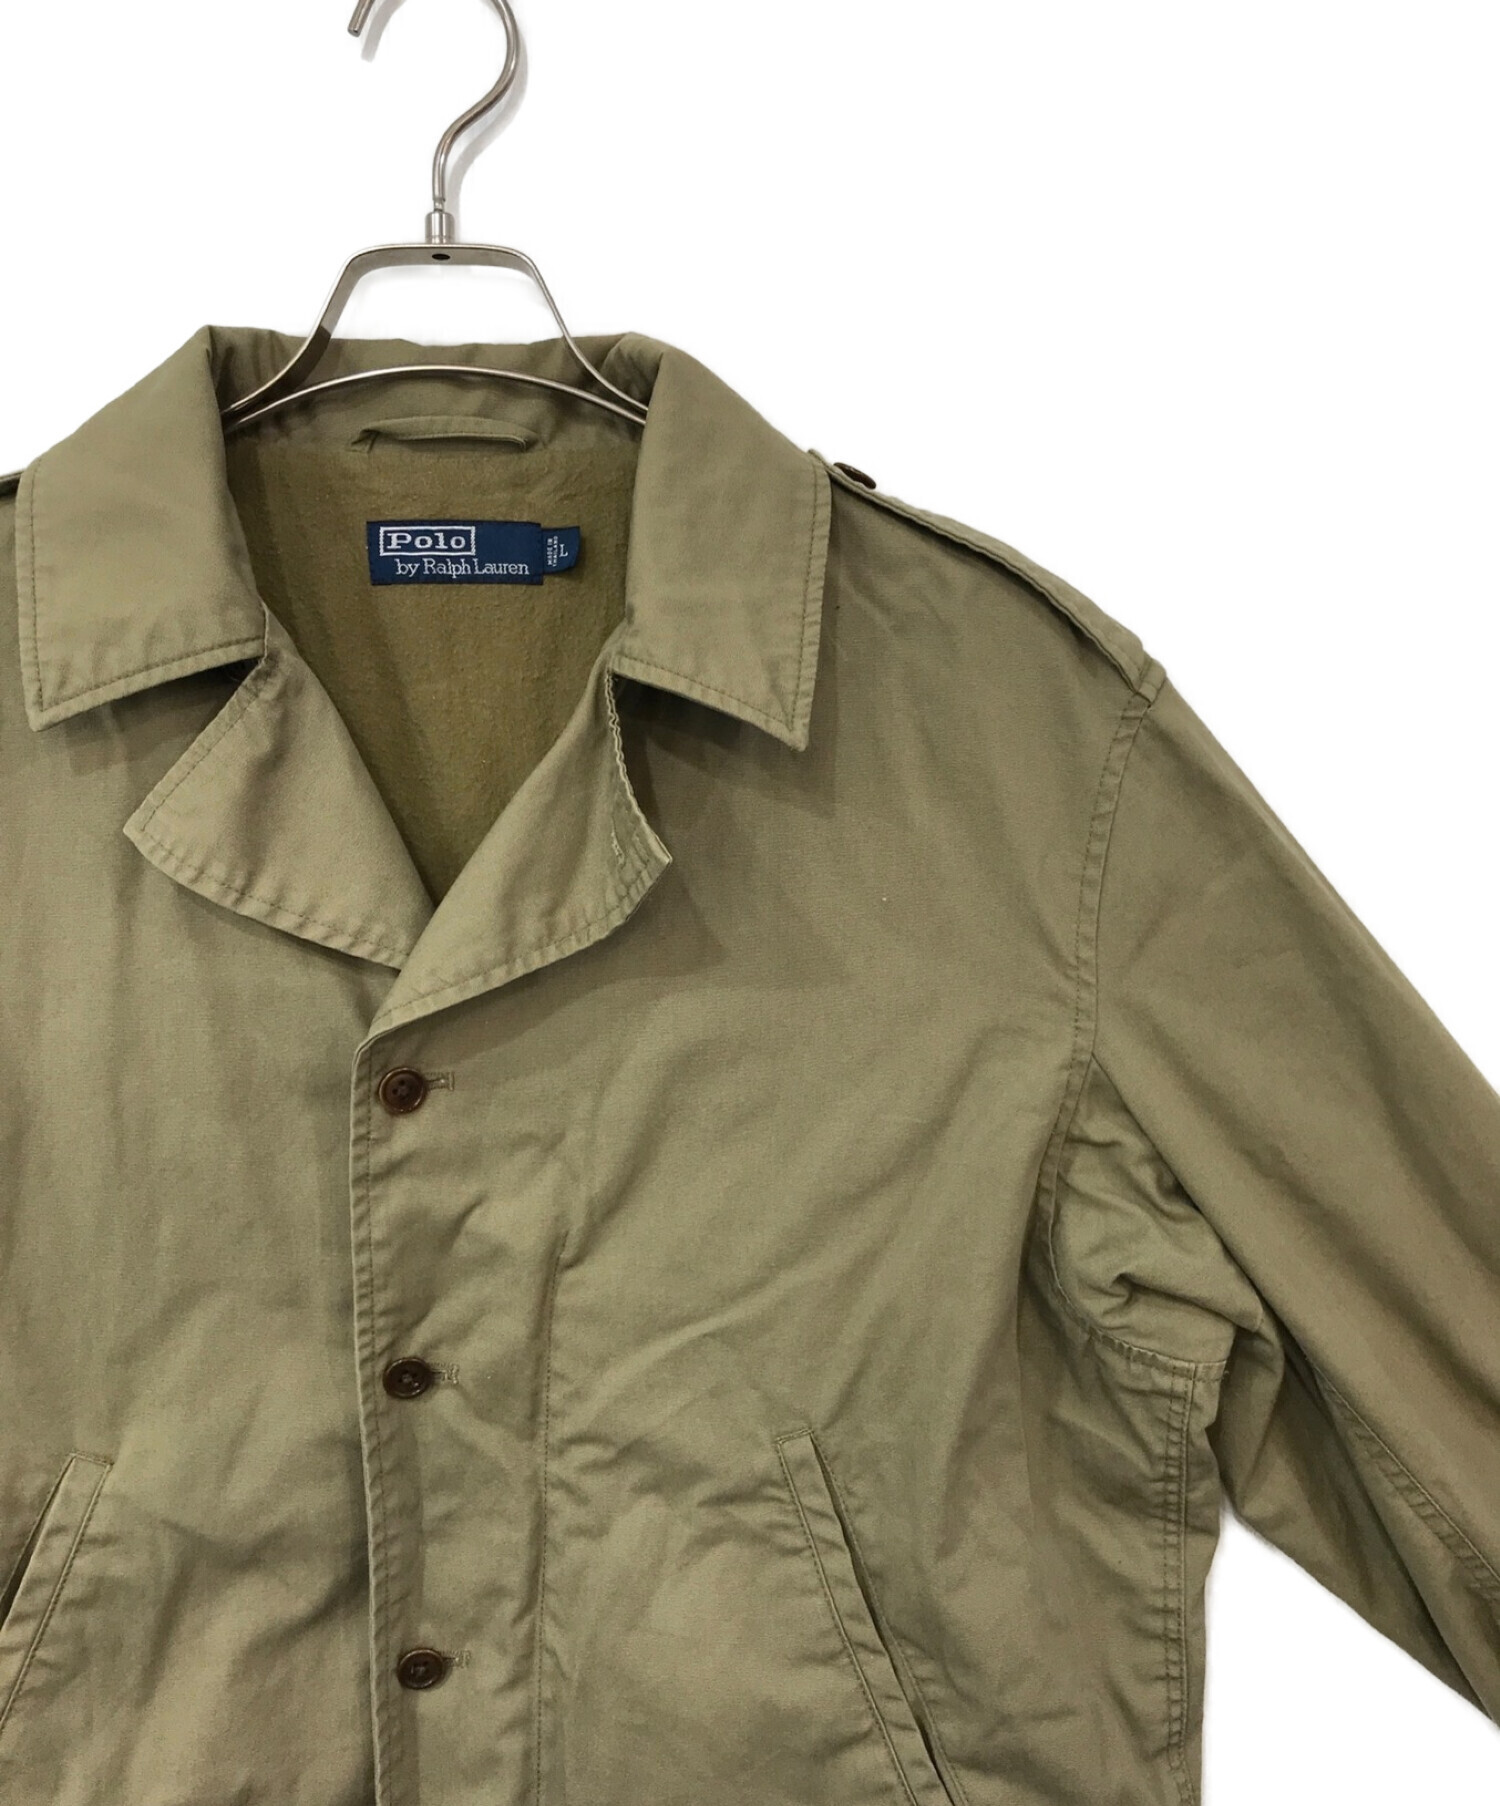 POLO RALPH LAUREN (ポロ・ラルフローレン) M1941 Key West Jacket カーキ サイズ:L